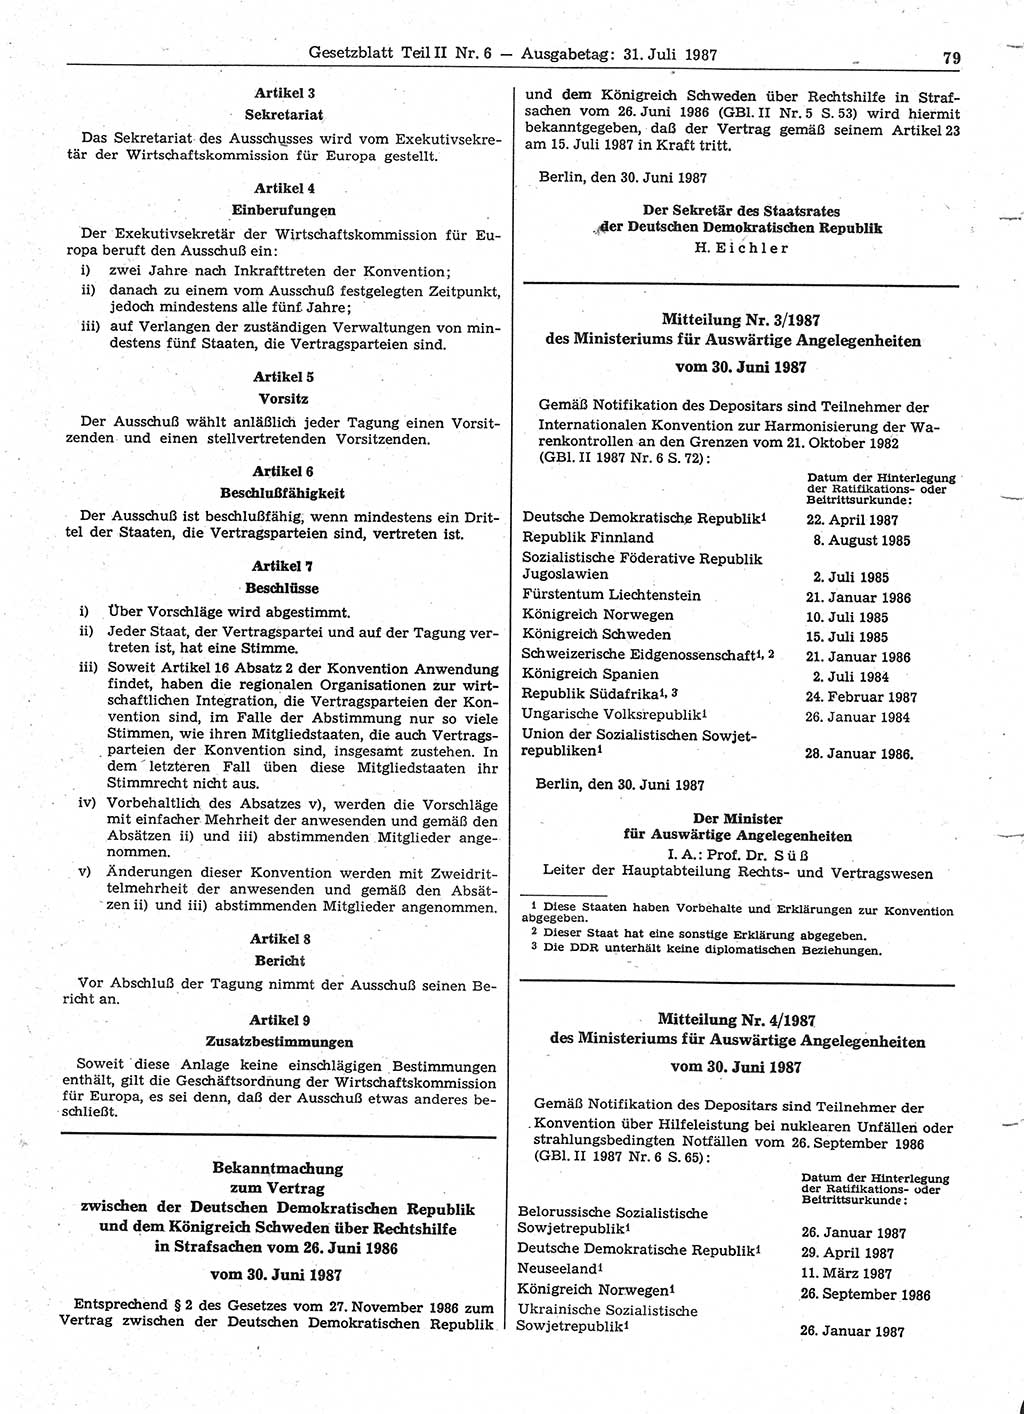 Gesetzblatt (GBl.) der Deutschen Demokratischen Republik (DDR) Teil ⅠⅠ 1987, Seite 79 (GBl. DDR ⅠⅠ 1987, S. 79)